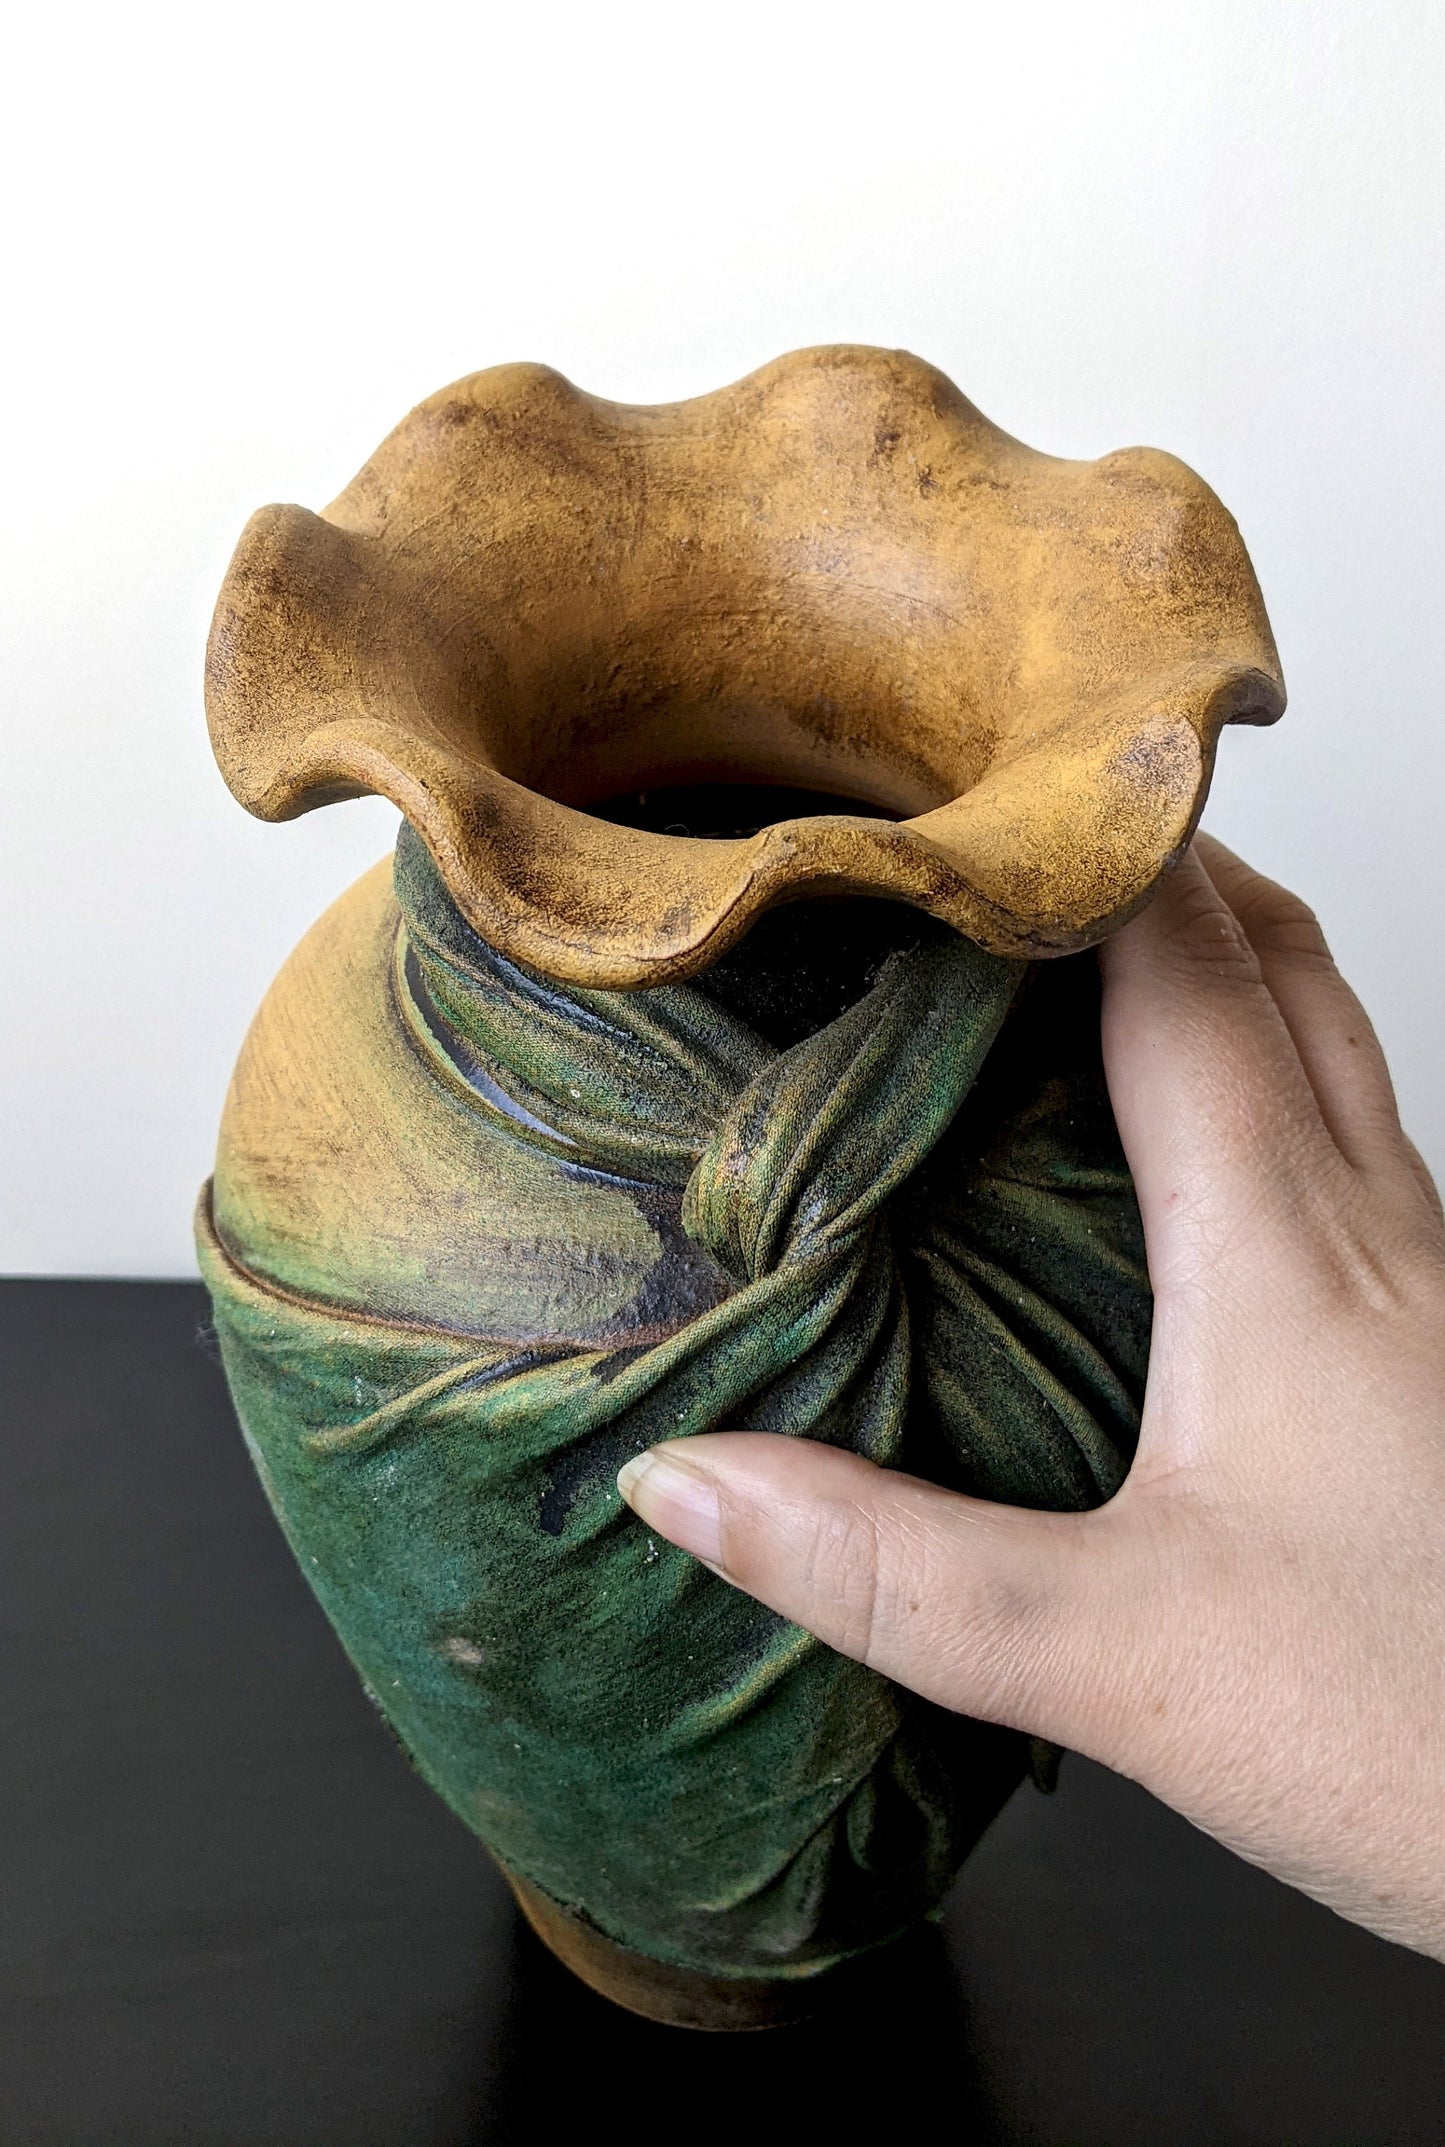 Large Vintage Stoneware Vase with Burlap Fabric Drape, Unique Sculpted Cloth Studio Pottery